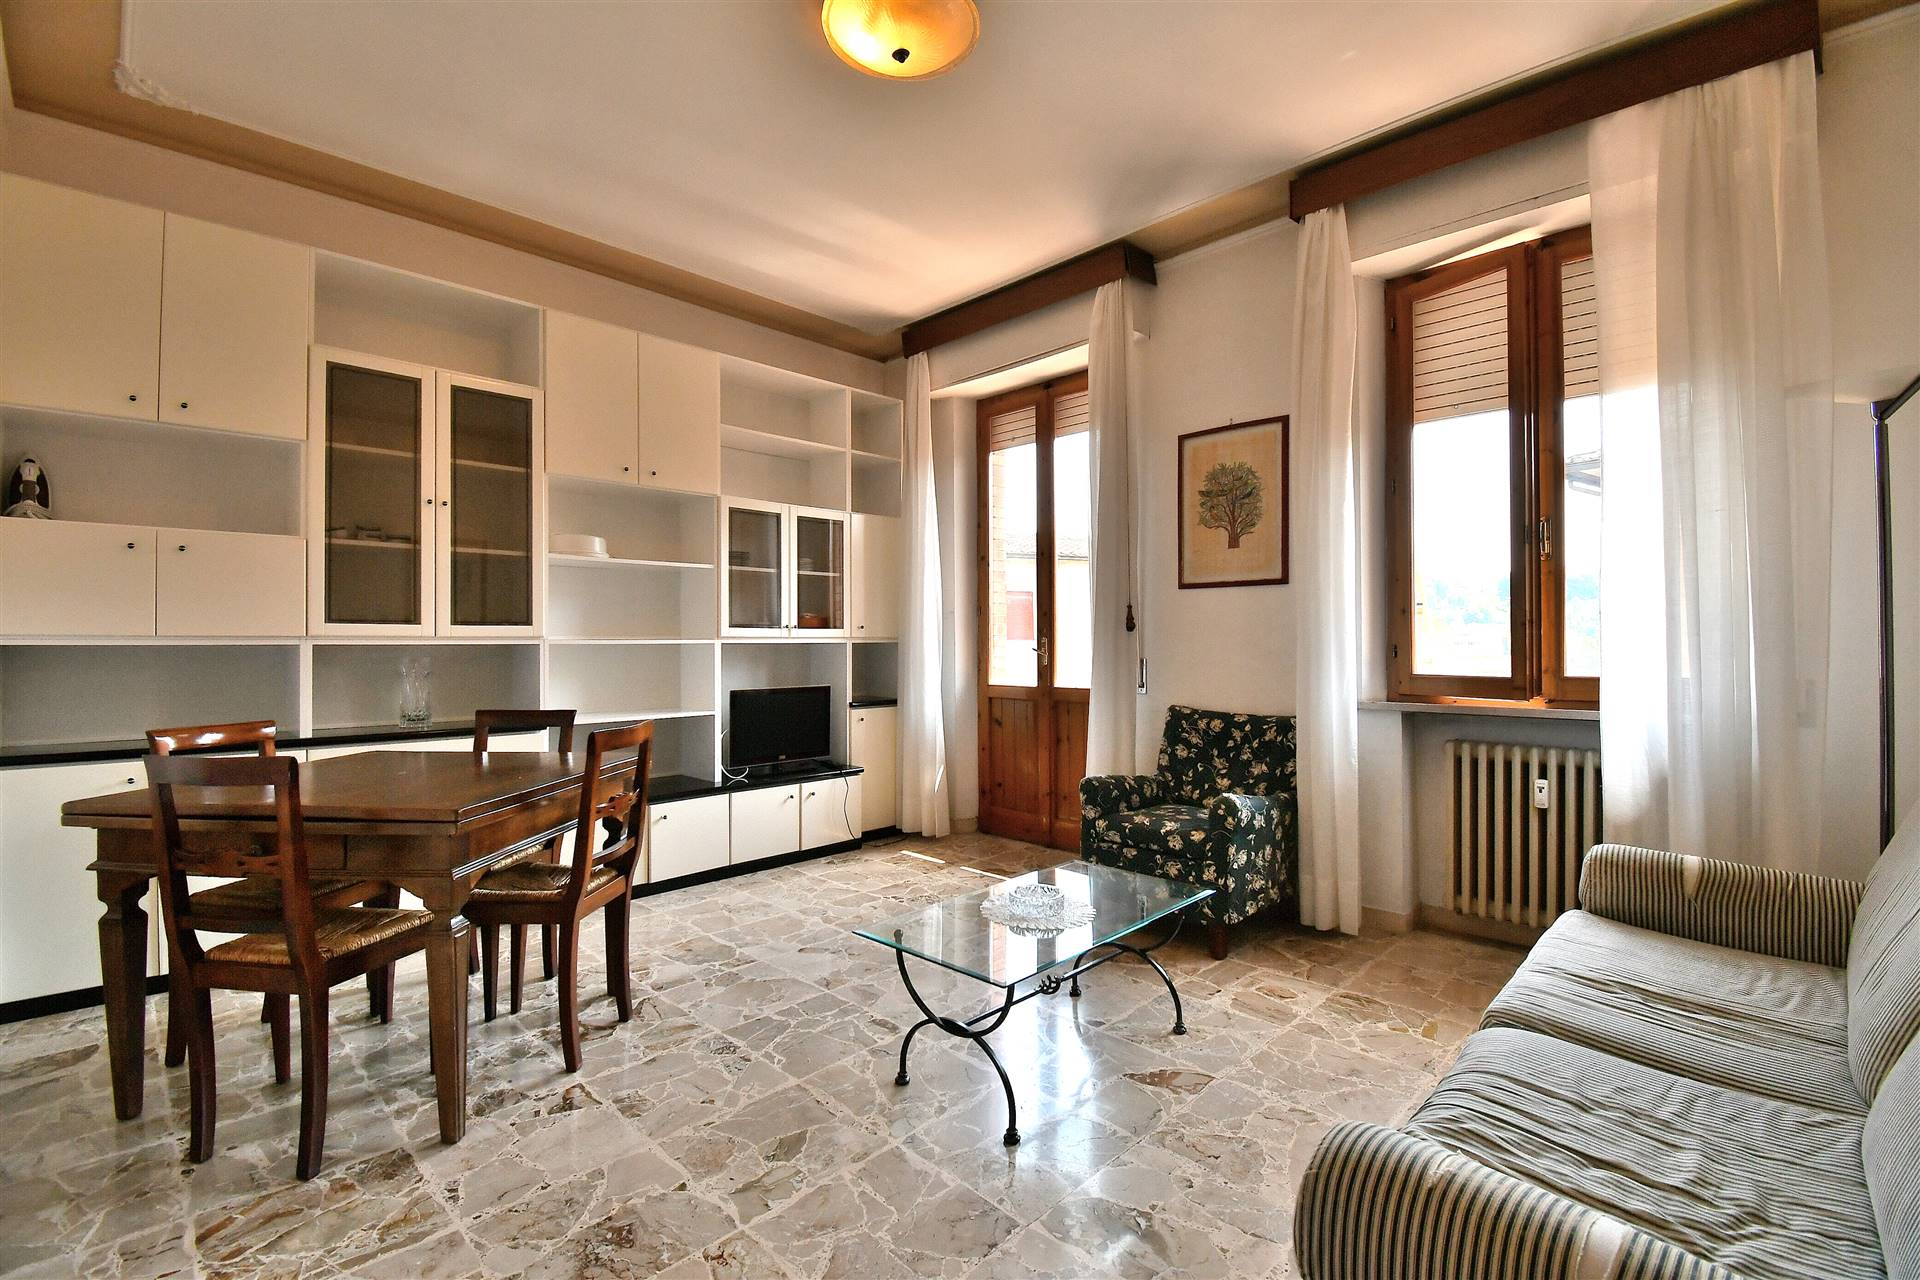 Appartamento libero su tre lati e disposto su un unico livello, sviluppato al secondo piano di una piccola palazzina, si compone di ingresso, cucina 